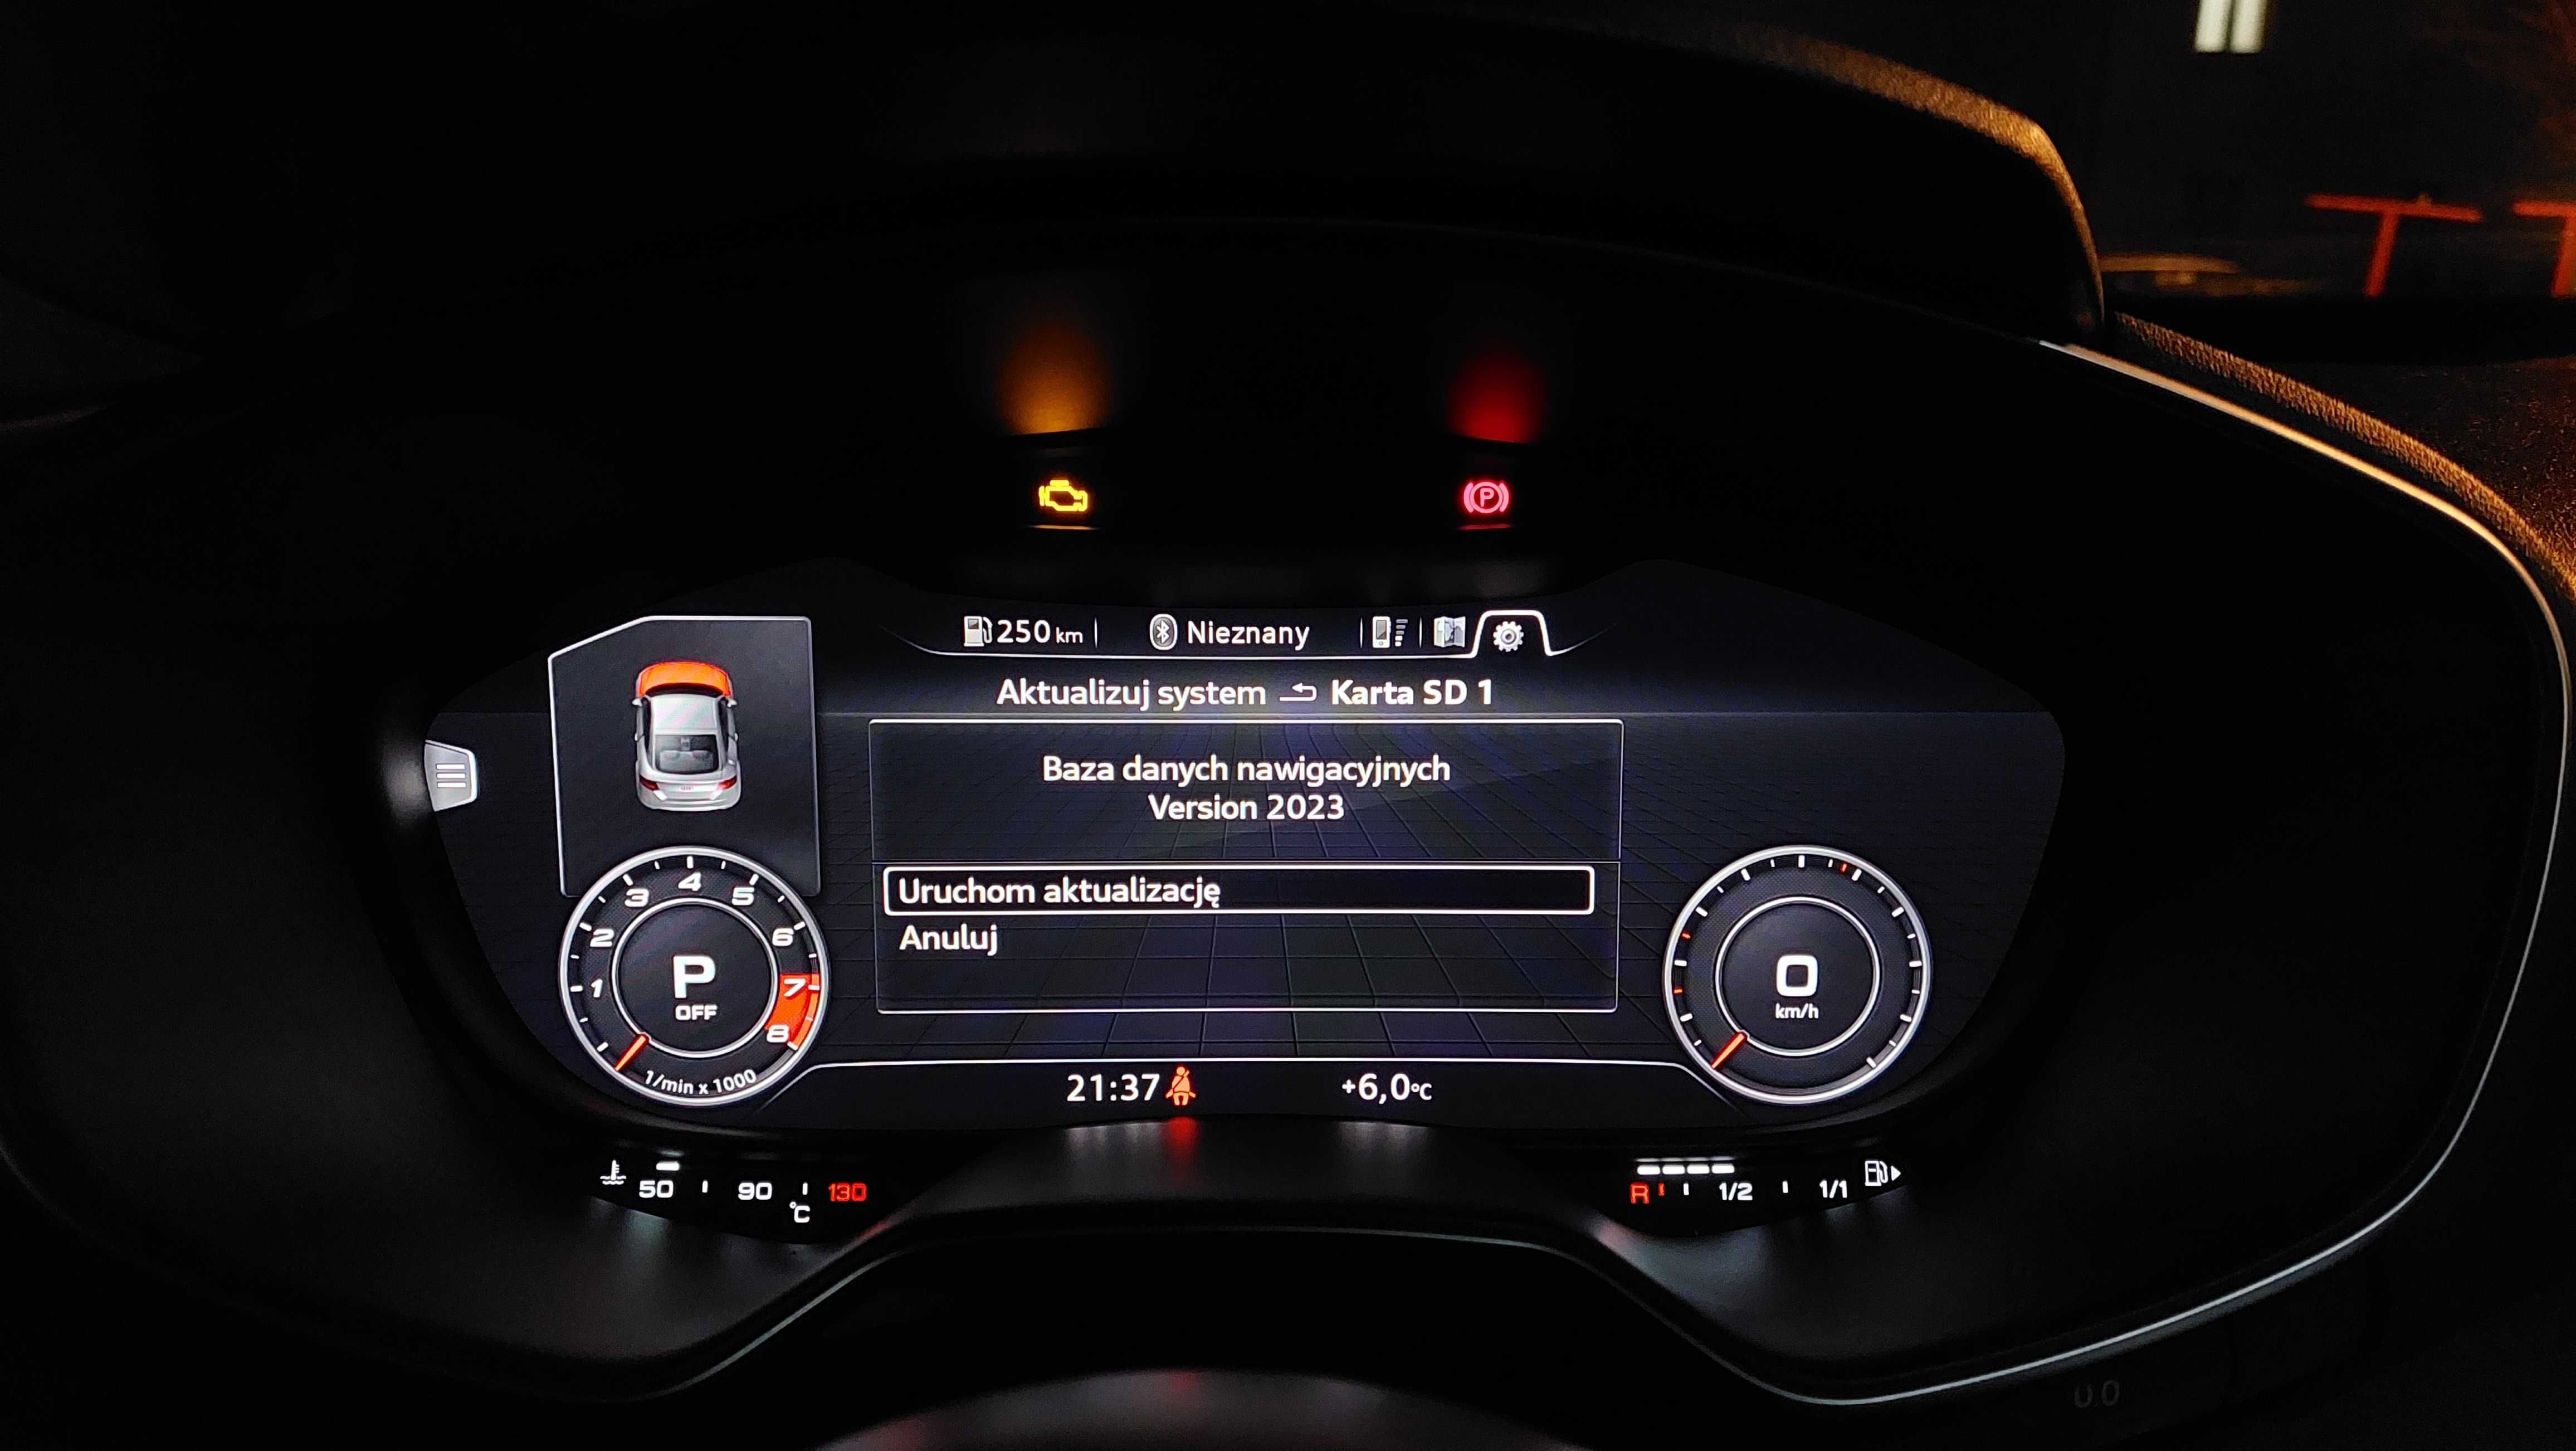 Audi Aktualizacja nawigacji map A3 A4 A5 A6 A7 A8 Q3 Q5 Q7 Q8 TT